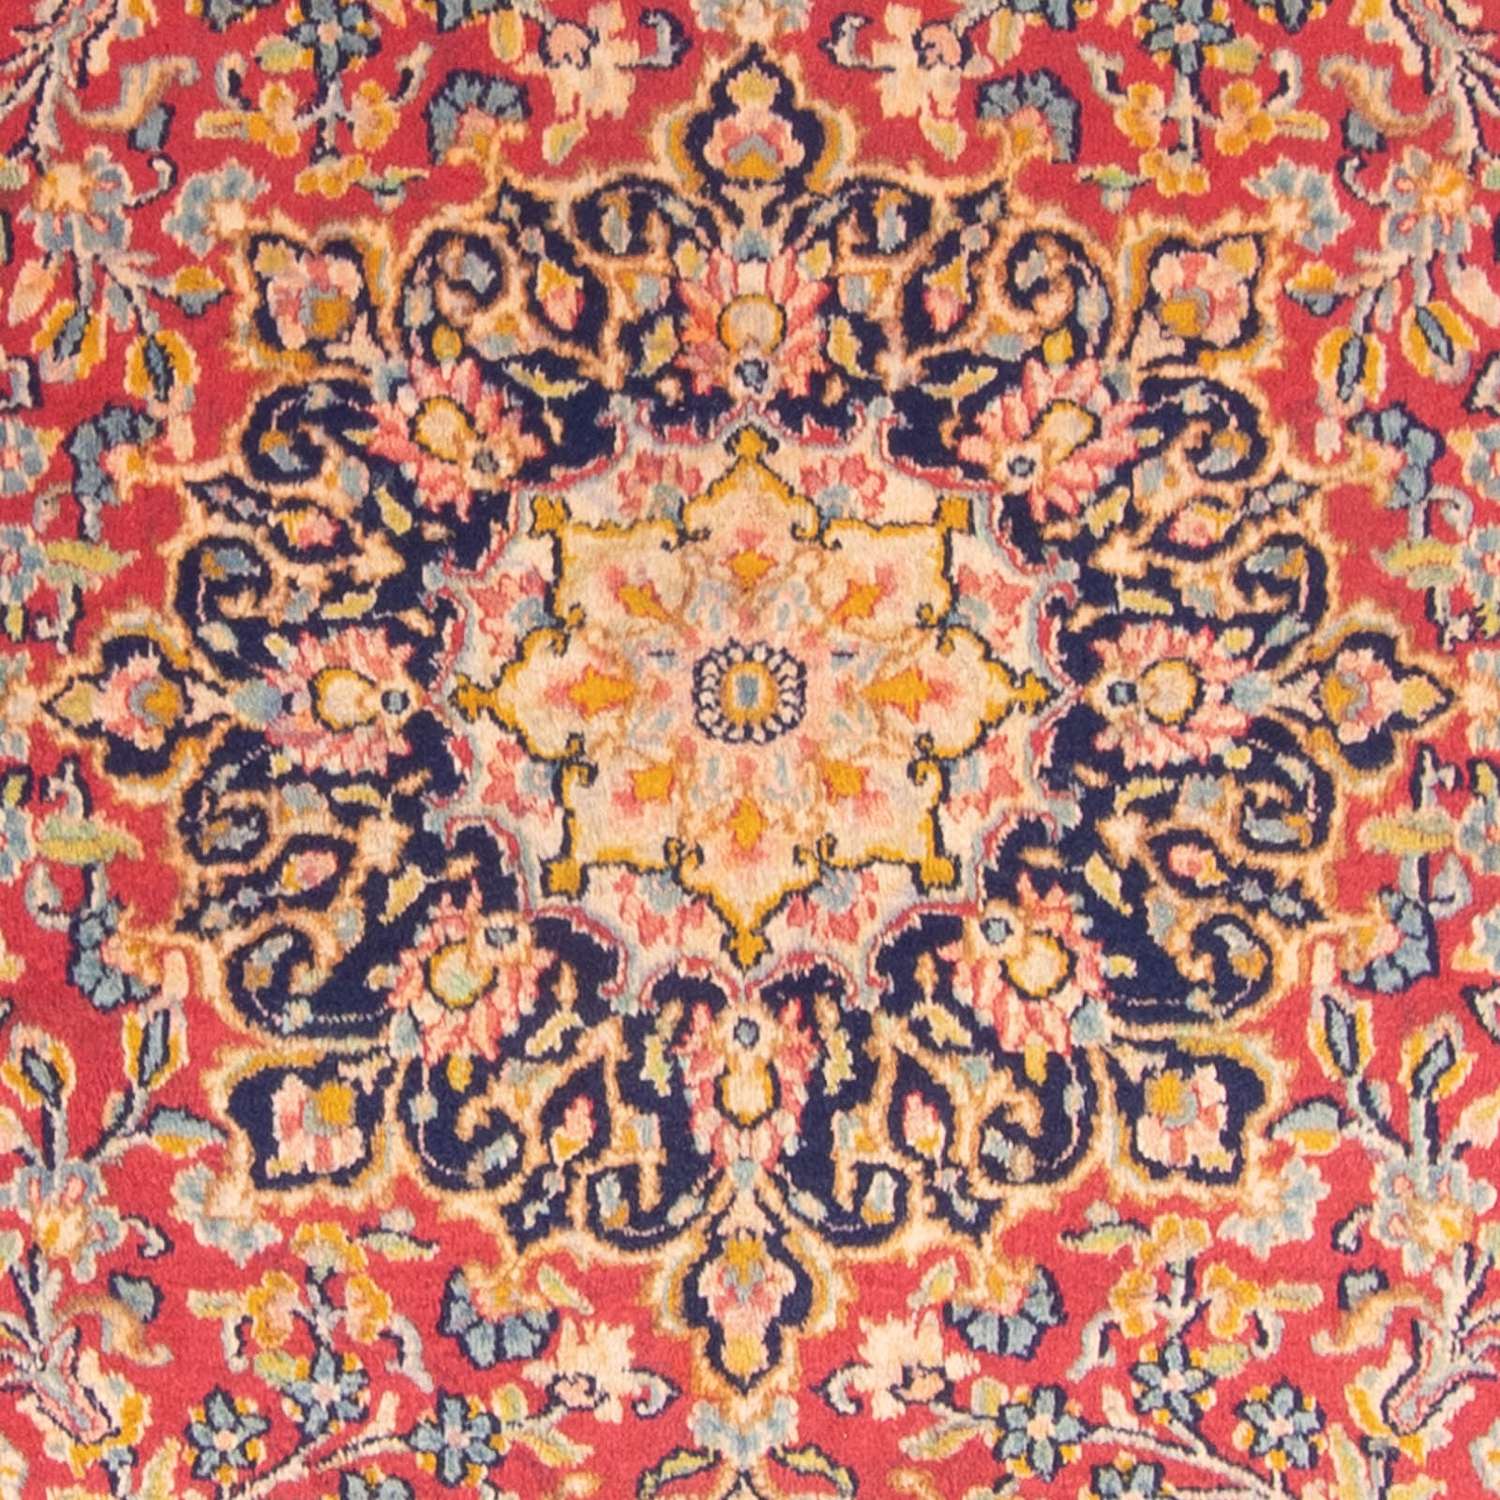 Perzisch tapijt - Klassiek - 340 x 243 cm - rood